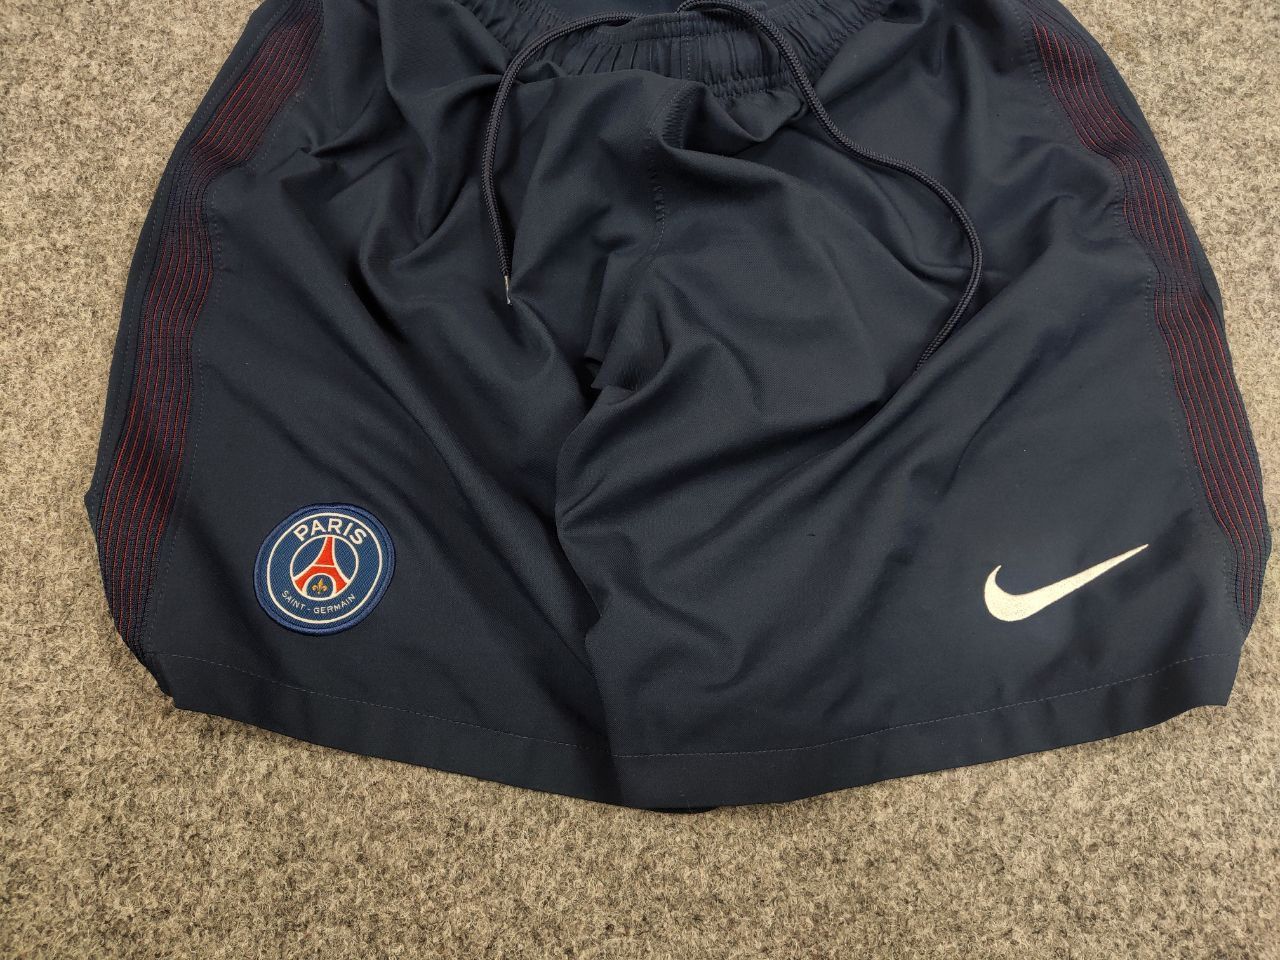 Nike Nike x Paris Saint-Germain PSG Vintage Style Blue Shorts Size US 32 / EU 48 - 8 Thumbnail